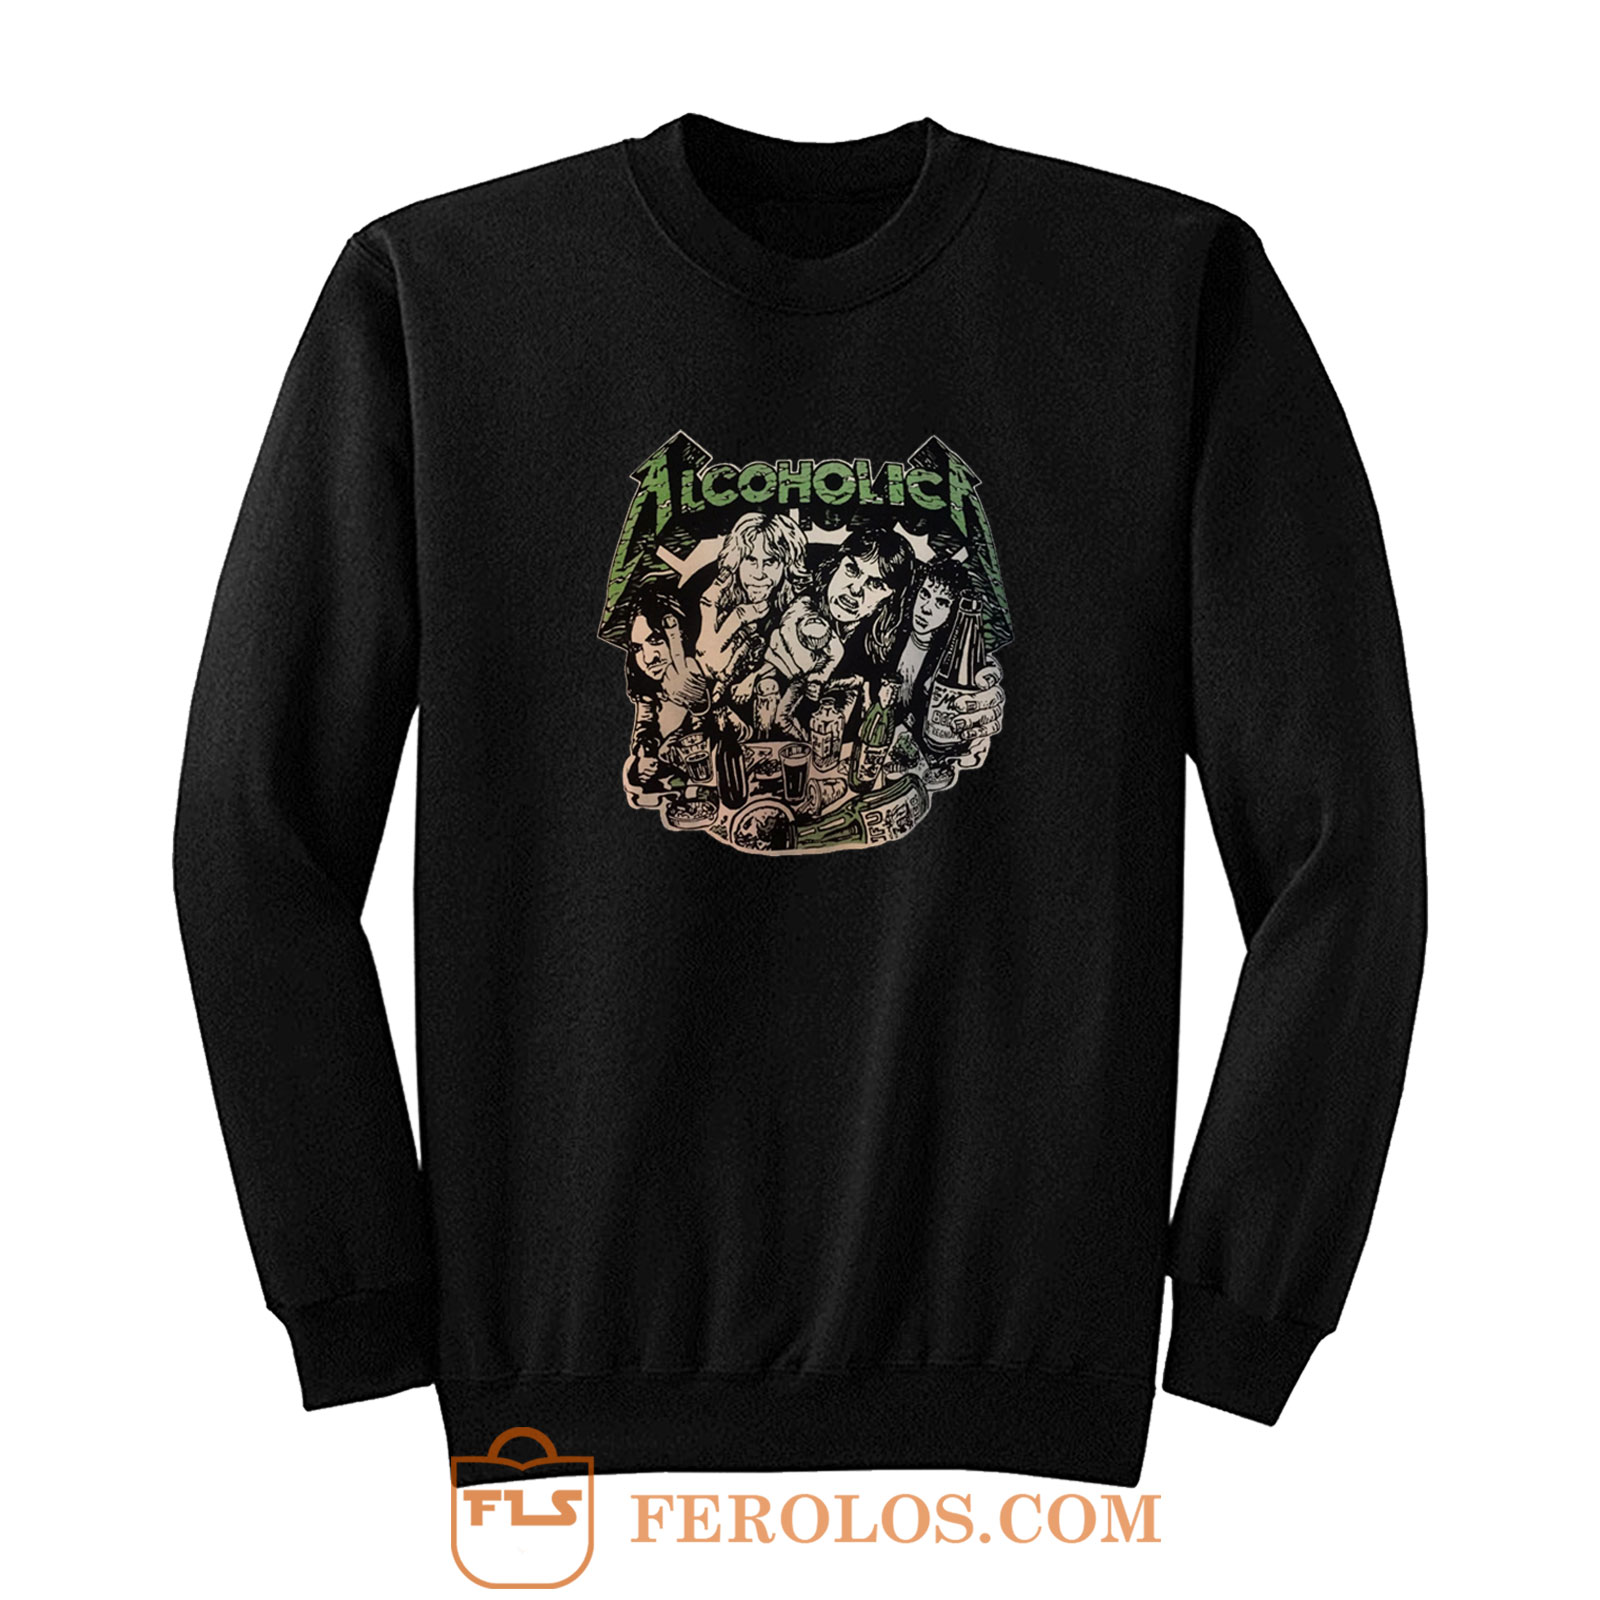 Metallica - Alcoholica Sweatshirt | FEROLOS.COM